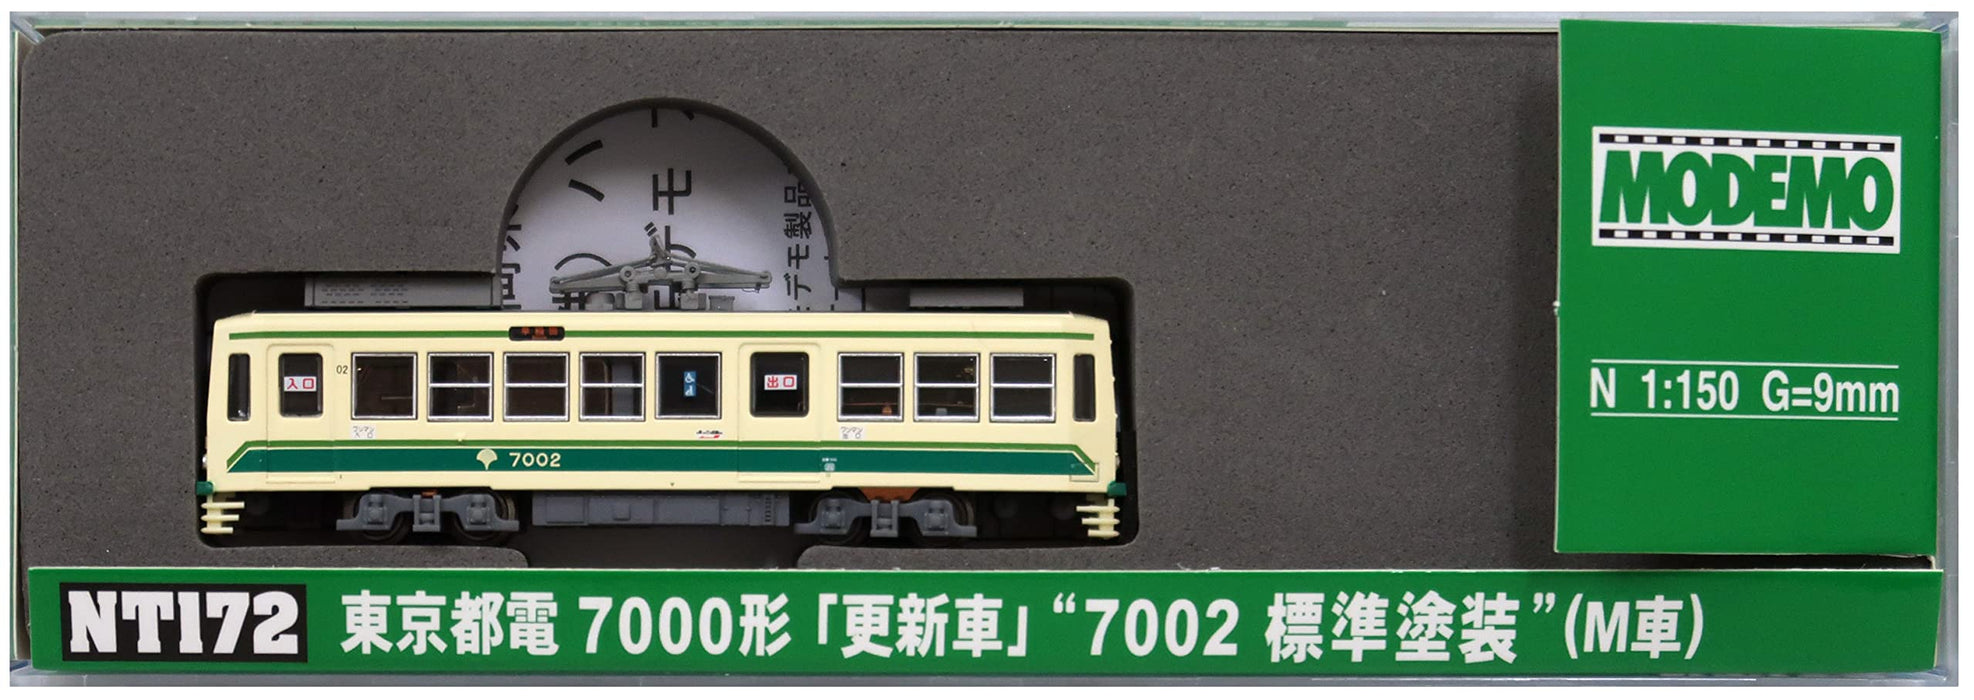 MODEMO Nt172 Tokyo Metropolitan Tram Type 7000 Updated '7002 Standard Painting' N Scale